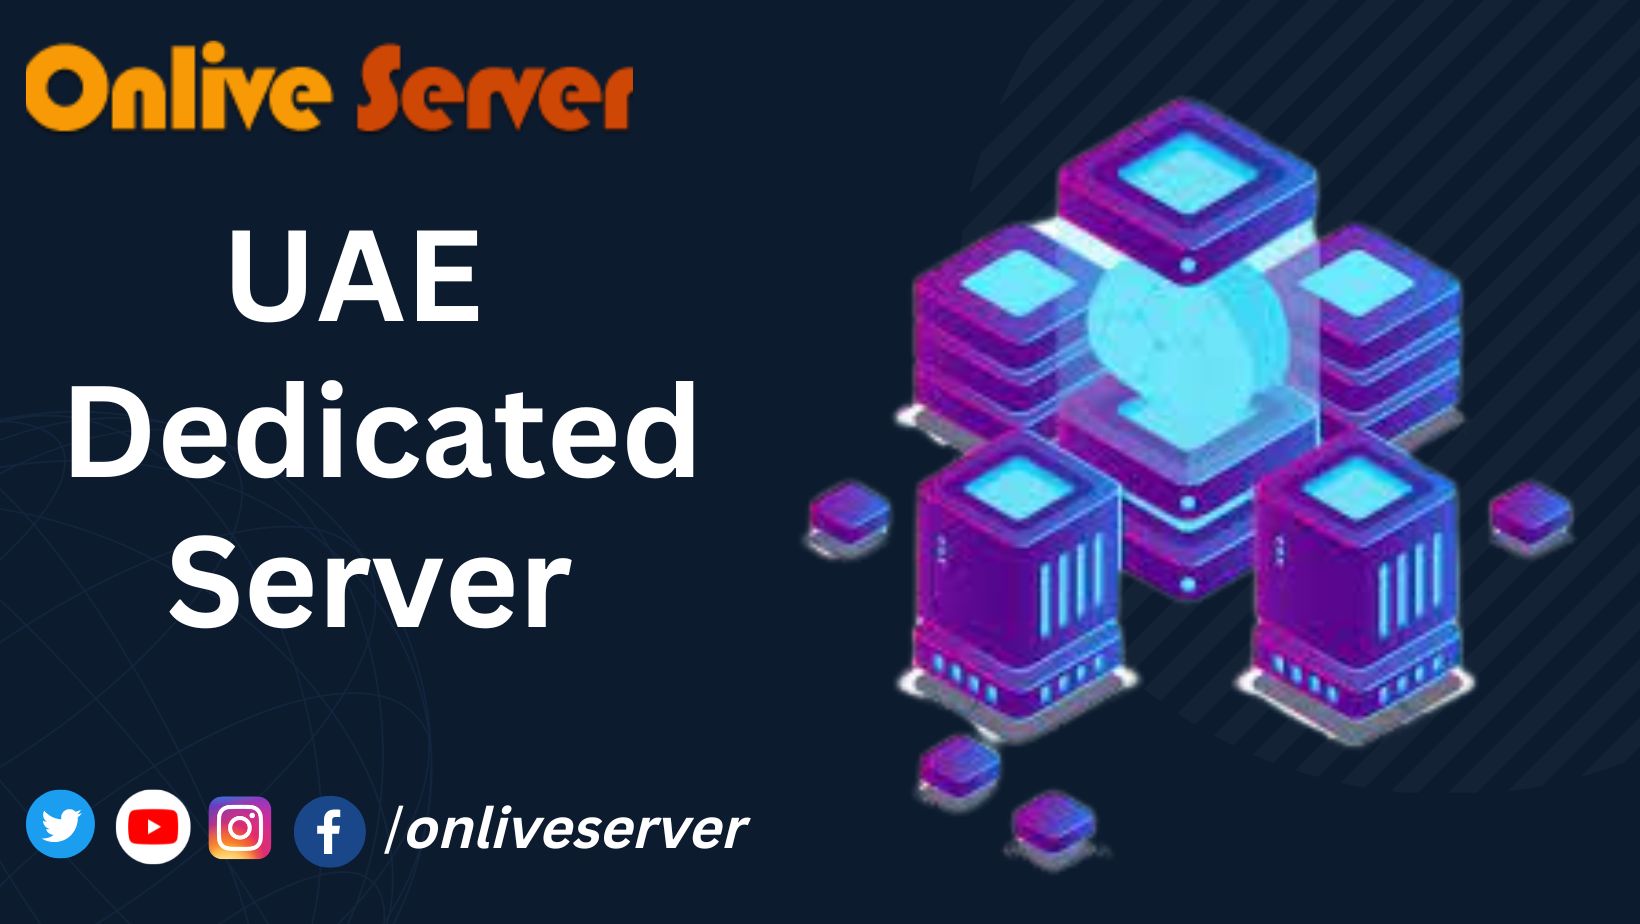 UAE Dedicated Server